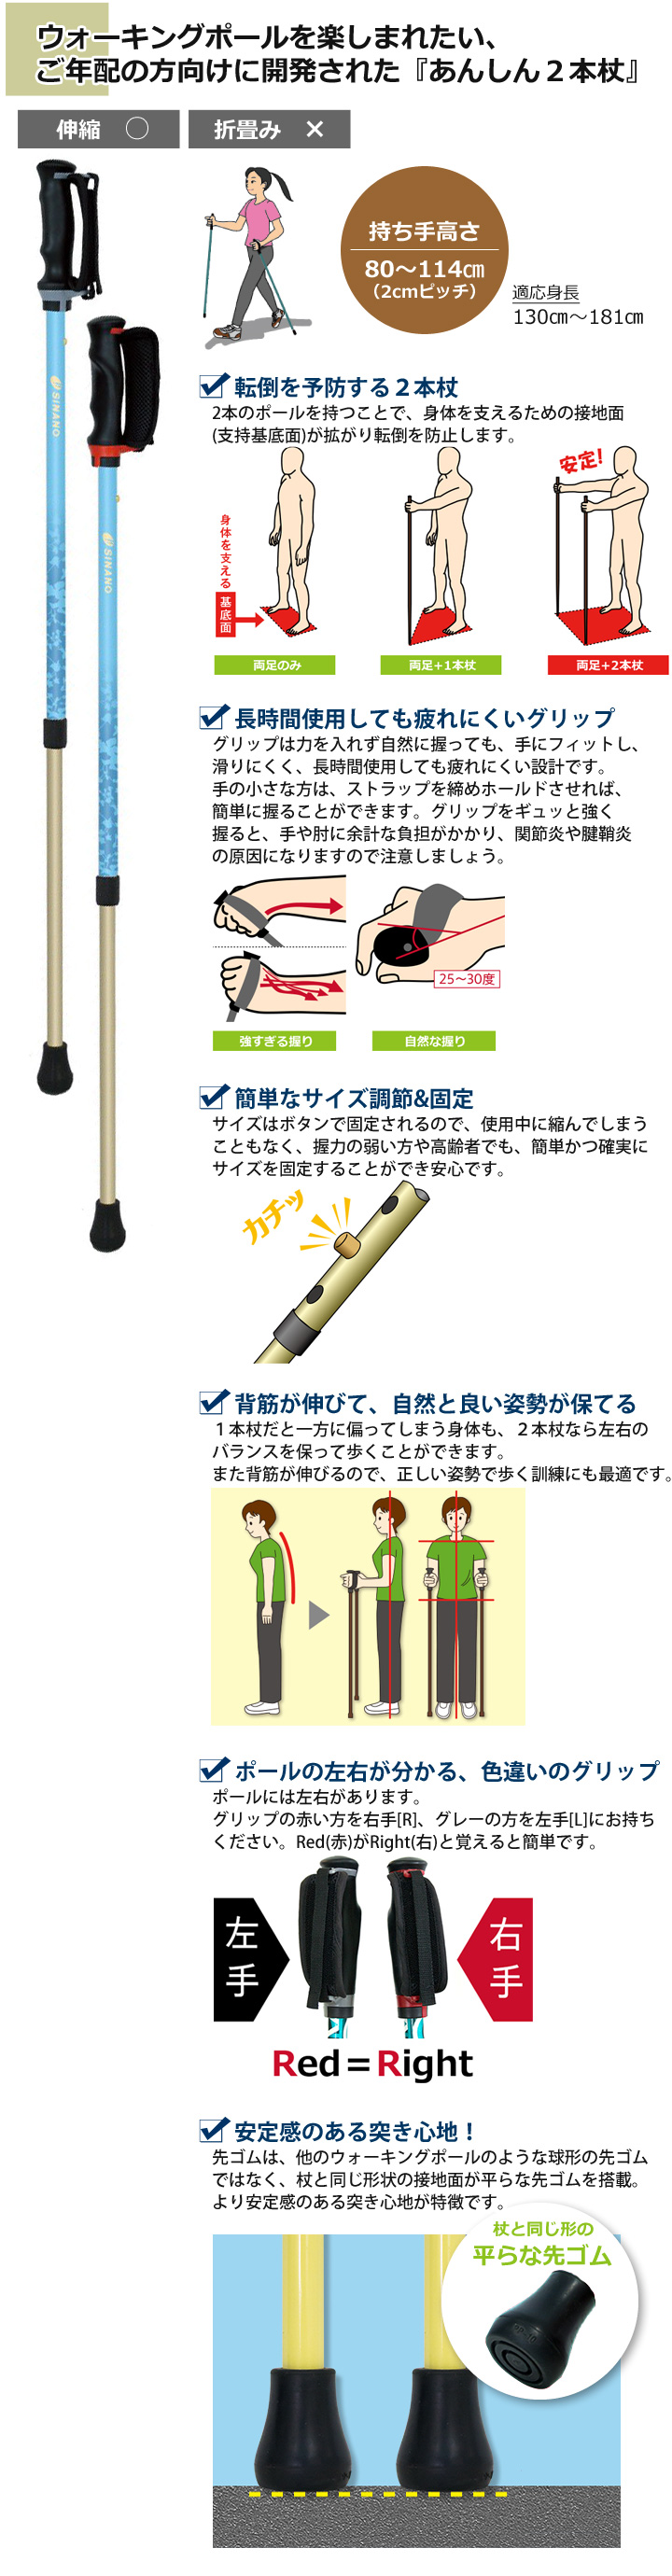 あんしん2本杖 [ブルー]【シナノ】 | シルバーカー・歩行用品通販のロッキー